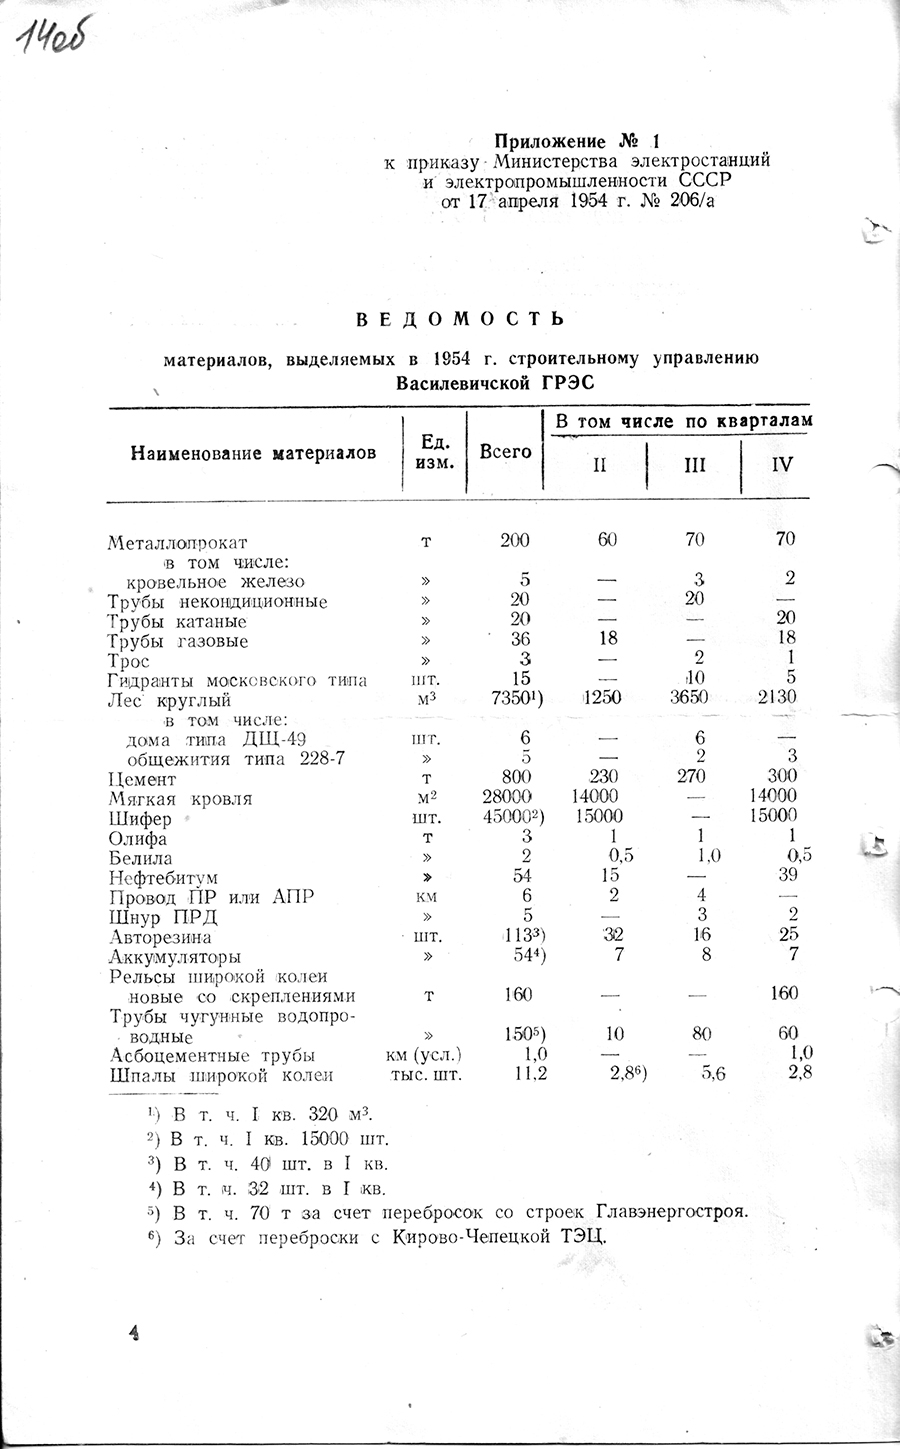 Befehl Nr. 206/a des Ministeriums für Kraftwerke und Elektroindustrie der UdSSR zur Forcierung des Baus des Wassilevich-Kraftwerks-стр. 3